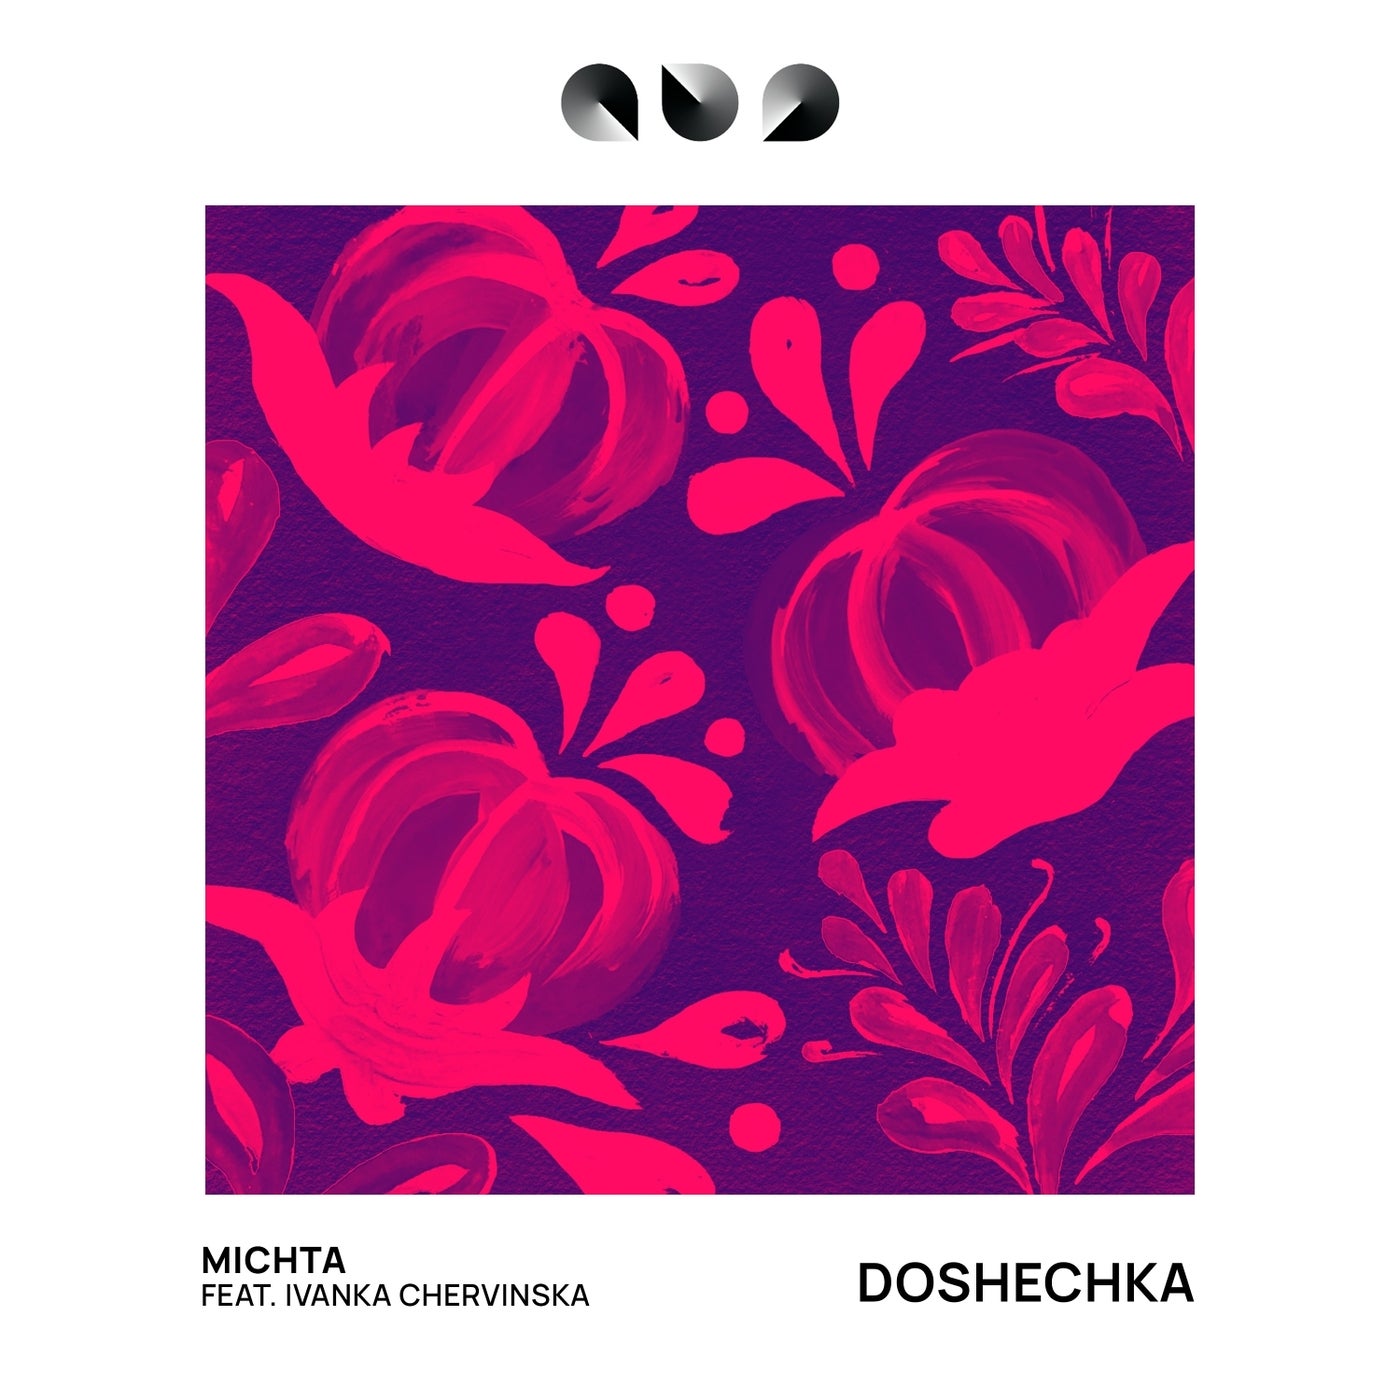 Doshechka